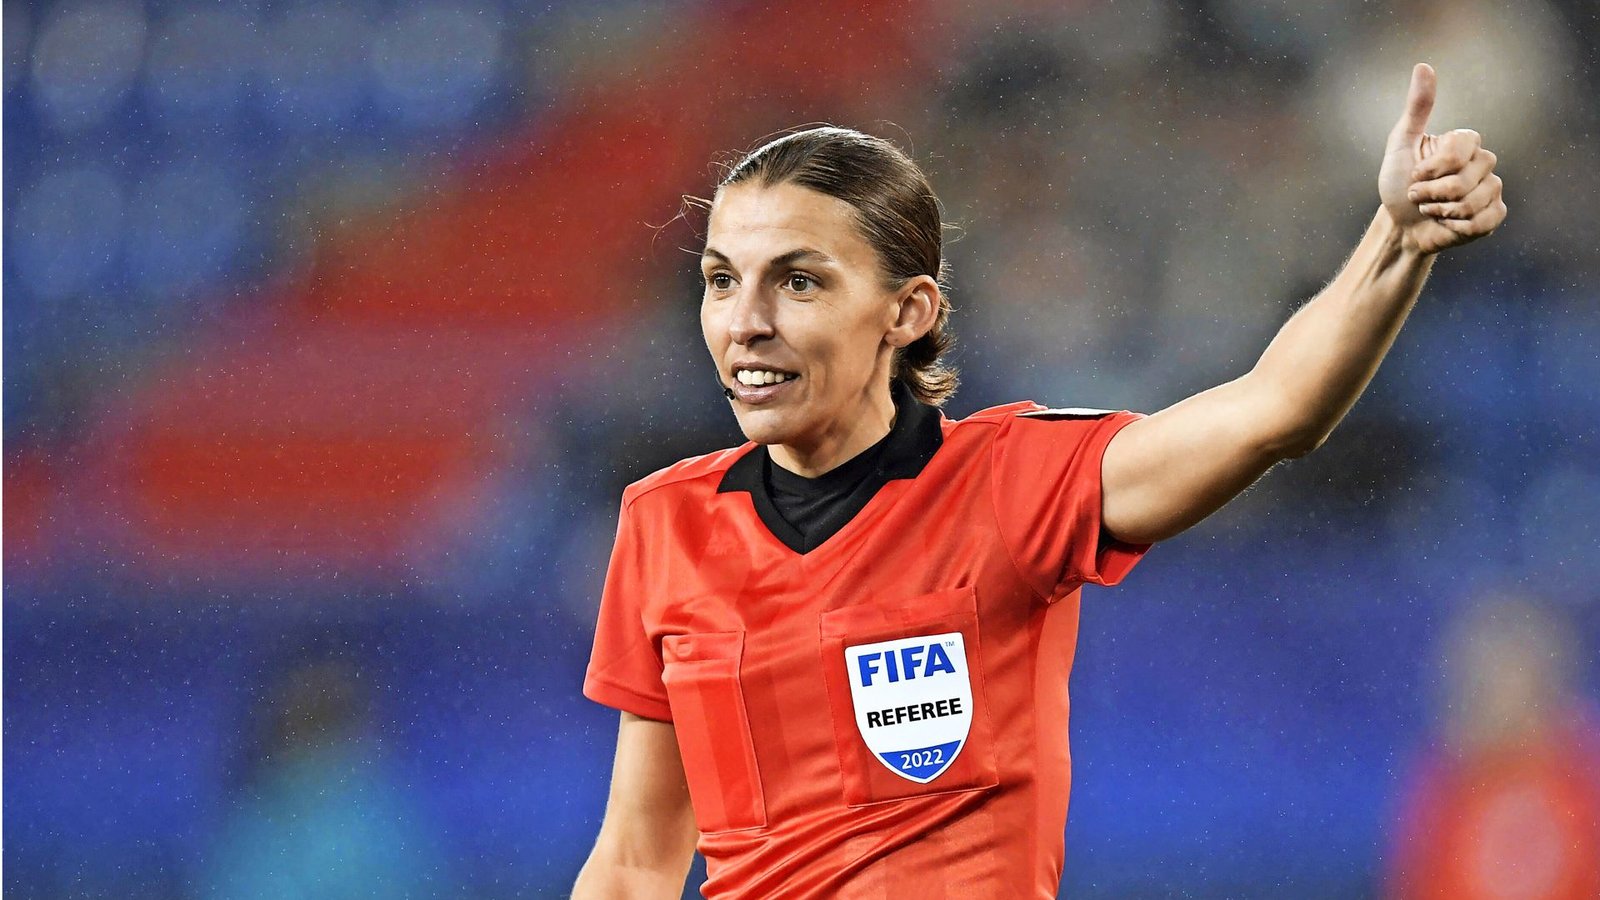 Stéphanie Frappart ist die erste Frau, die ein WM-Spiel pfeift.Foto: Imago/ANP